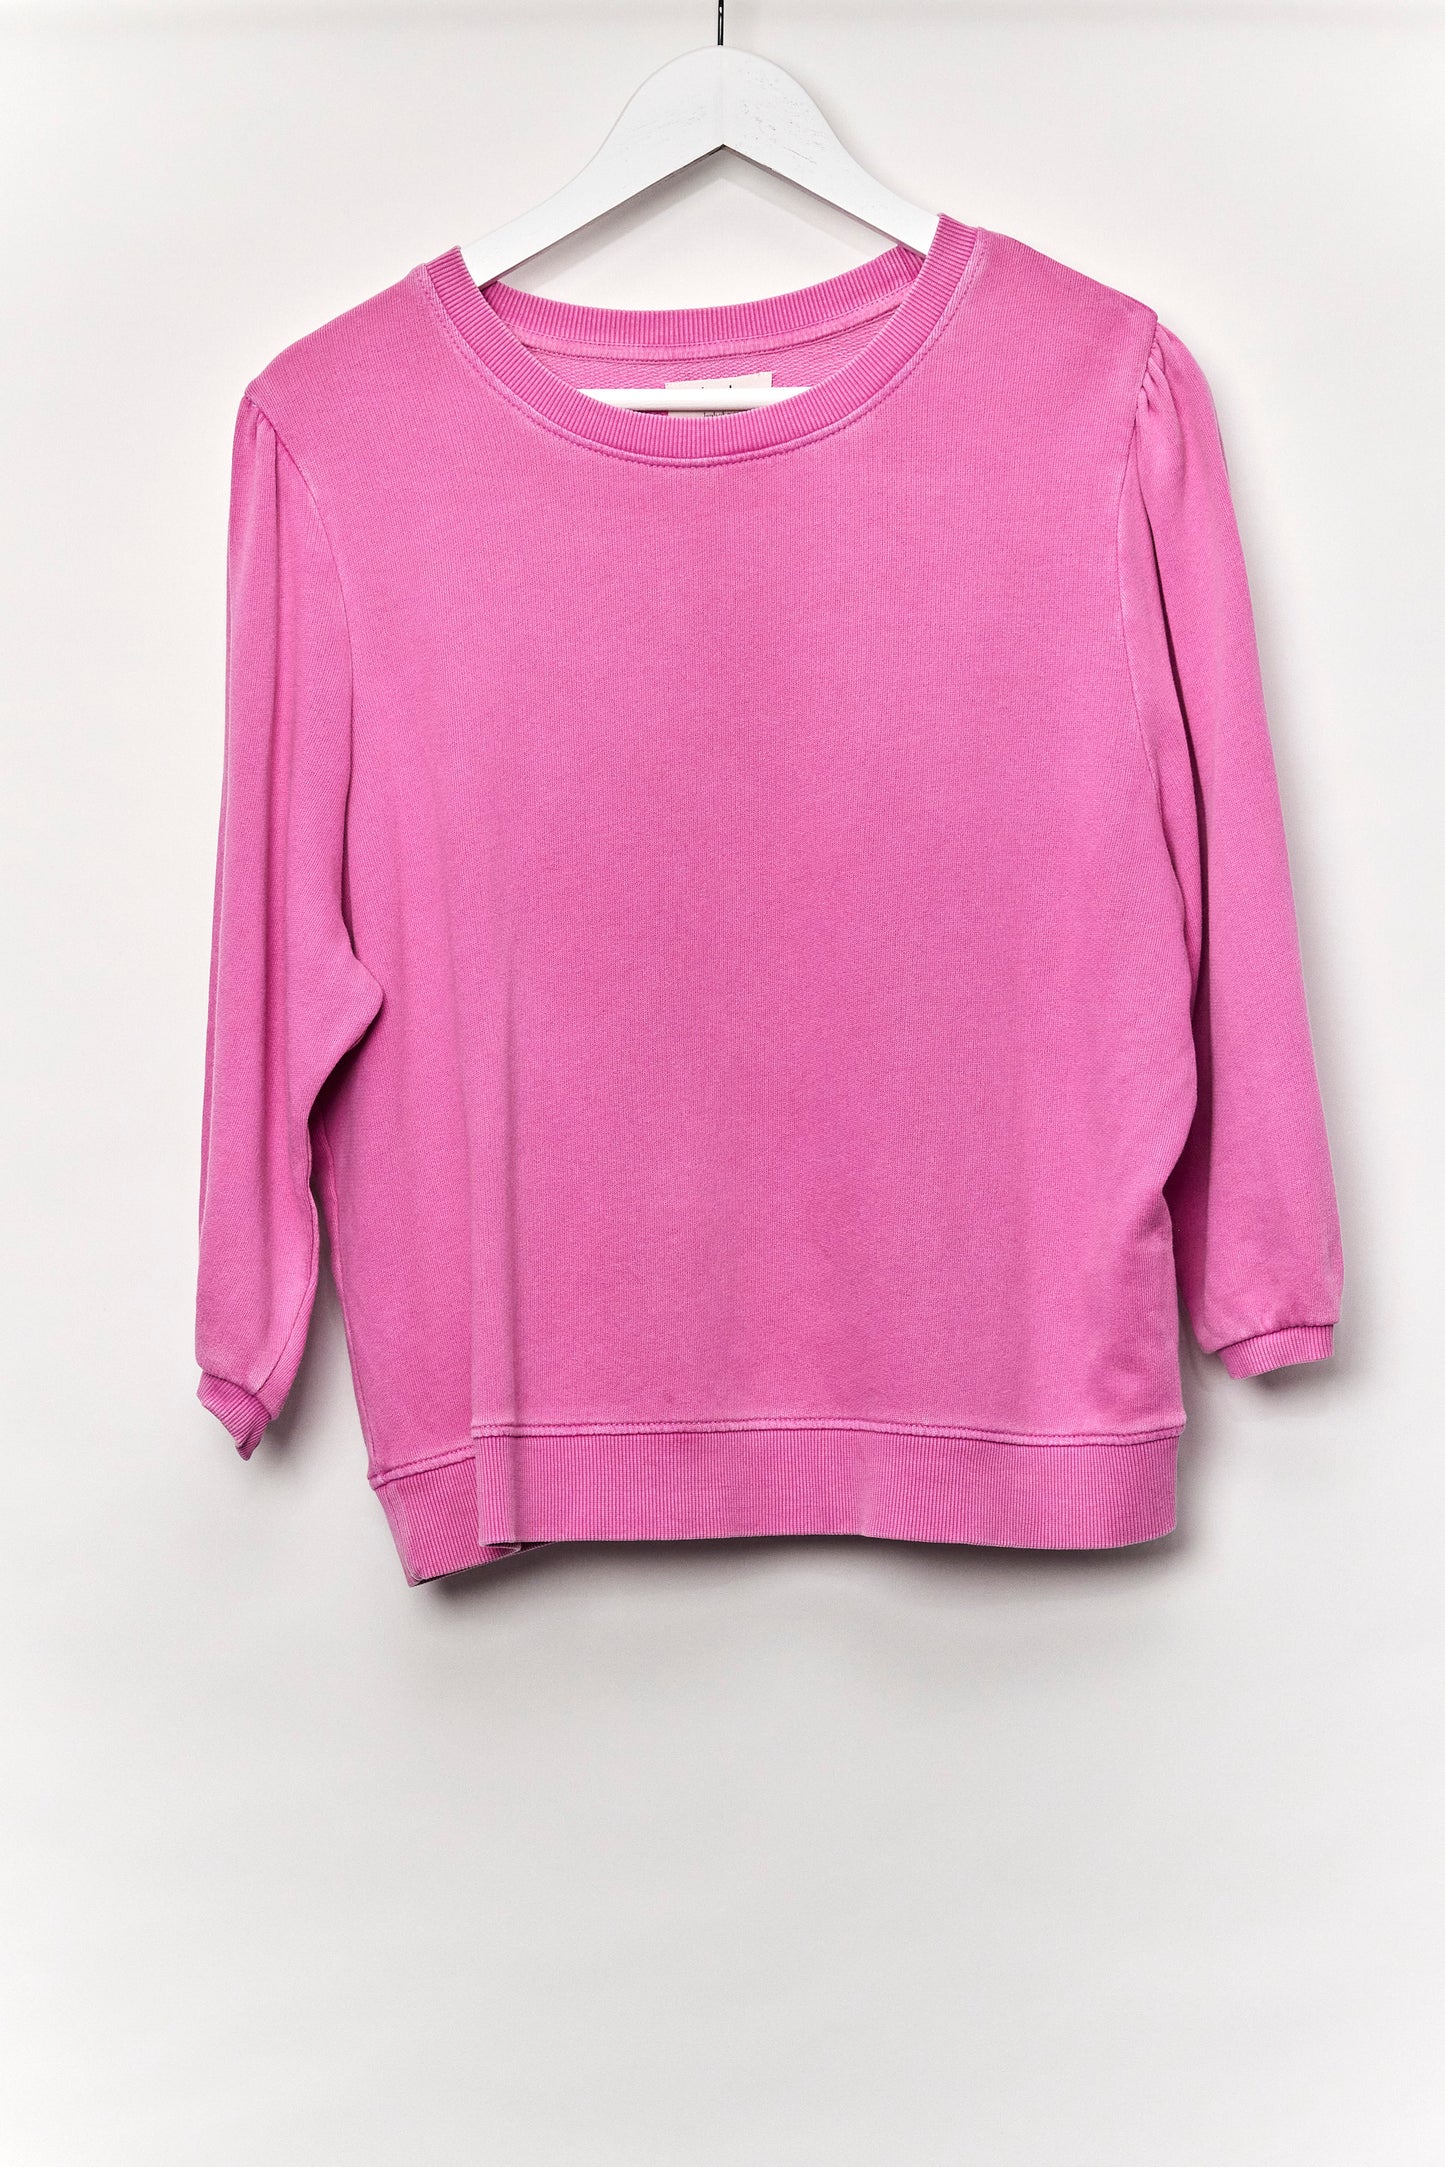 Womens Hush Pink Sweatshirt size Small